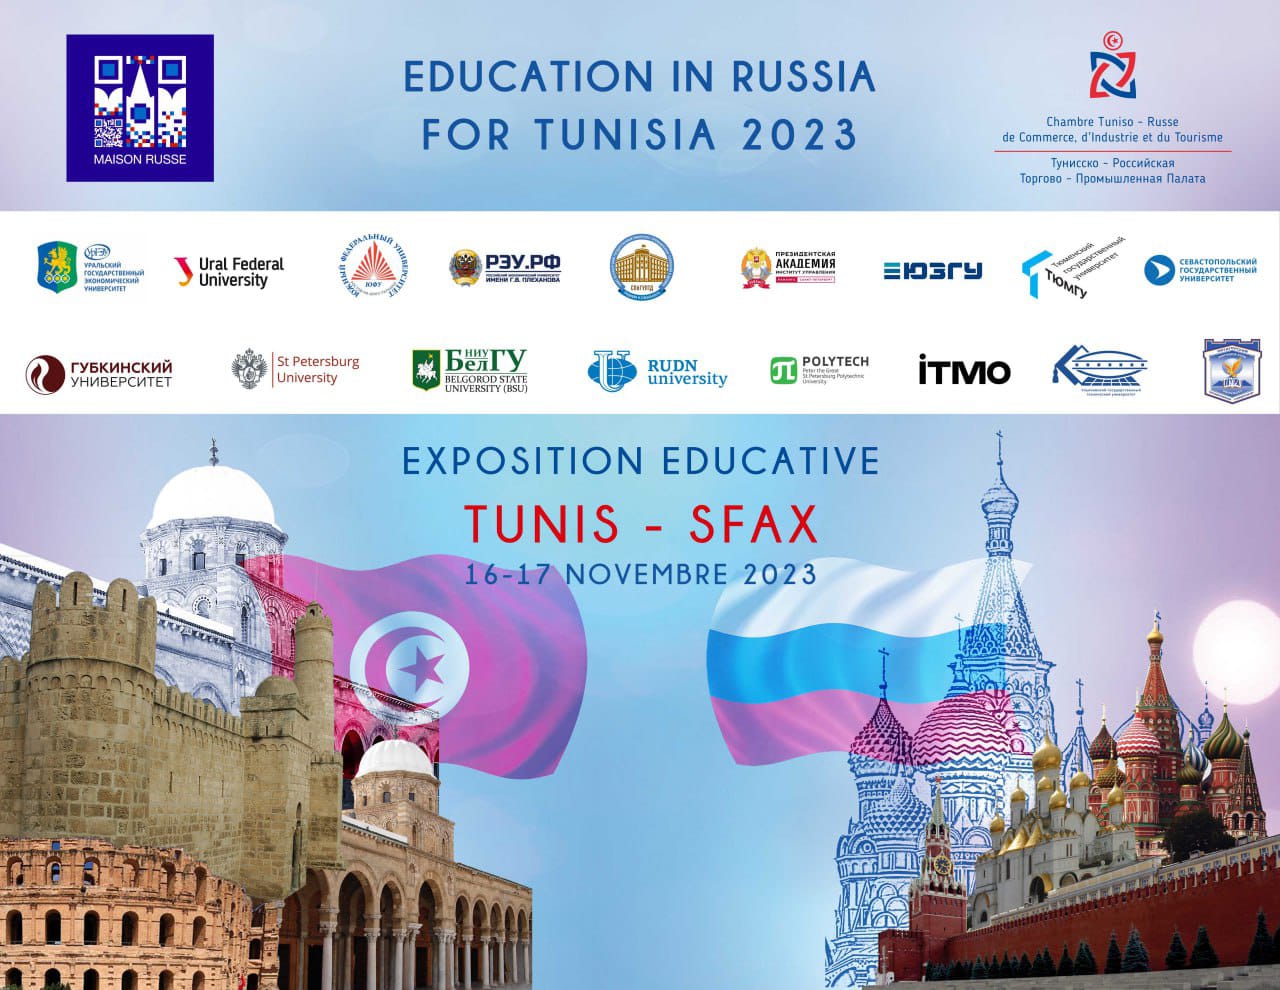 Образовательная выставка «Education in Russia for Tunisia 2023» в Тунисе